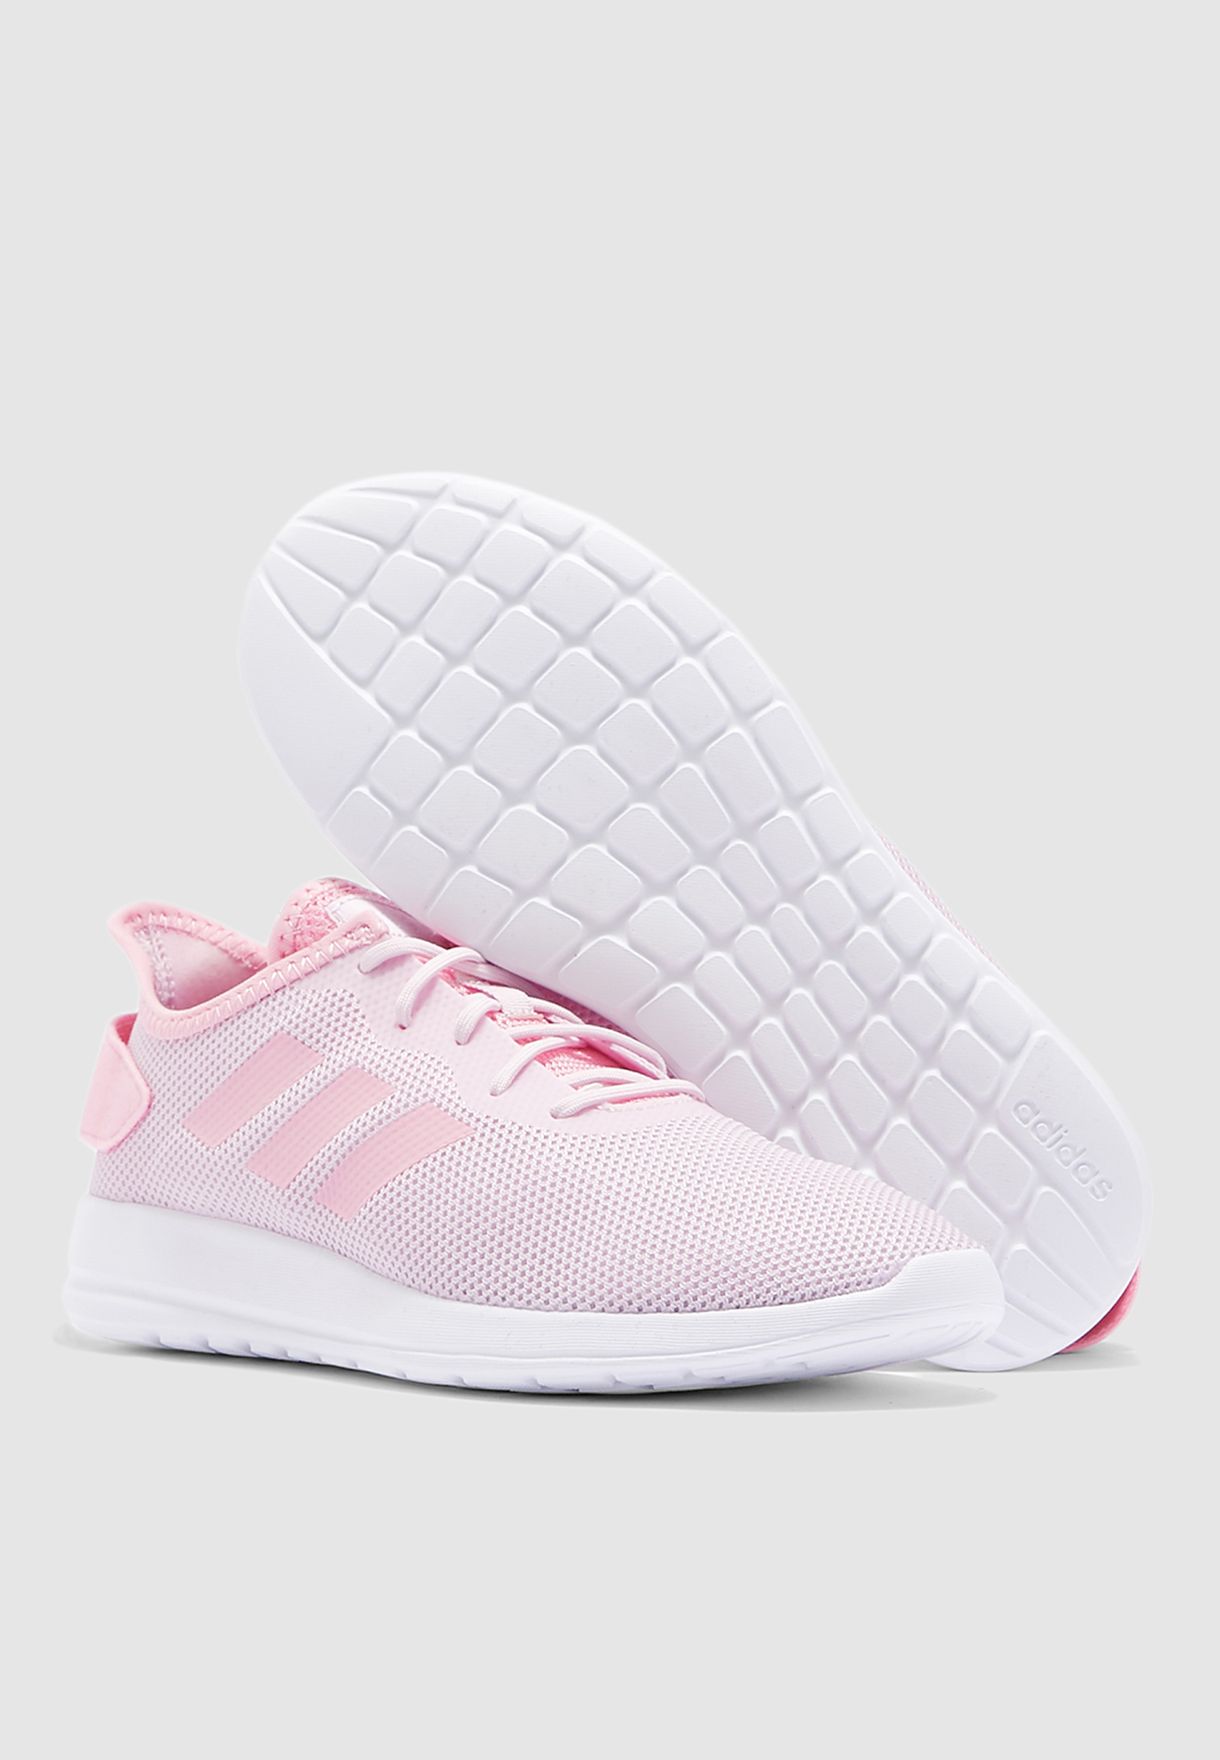 adidas yatra pink